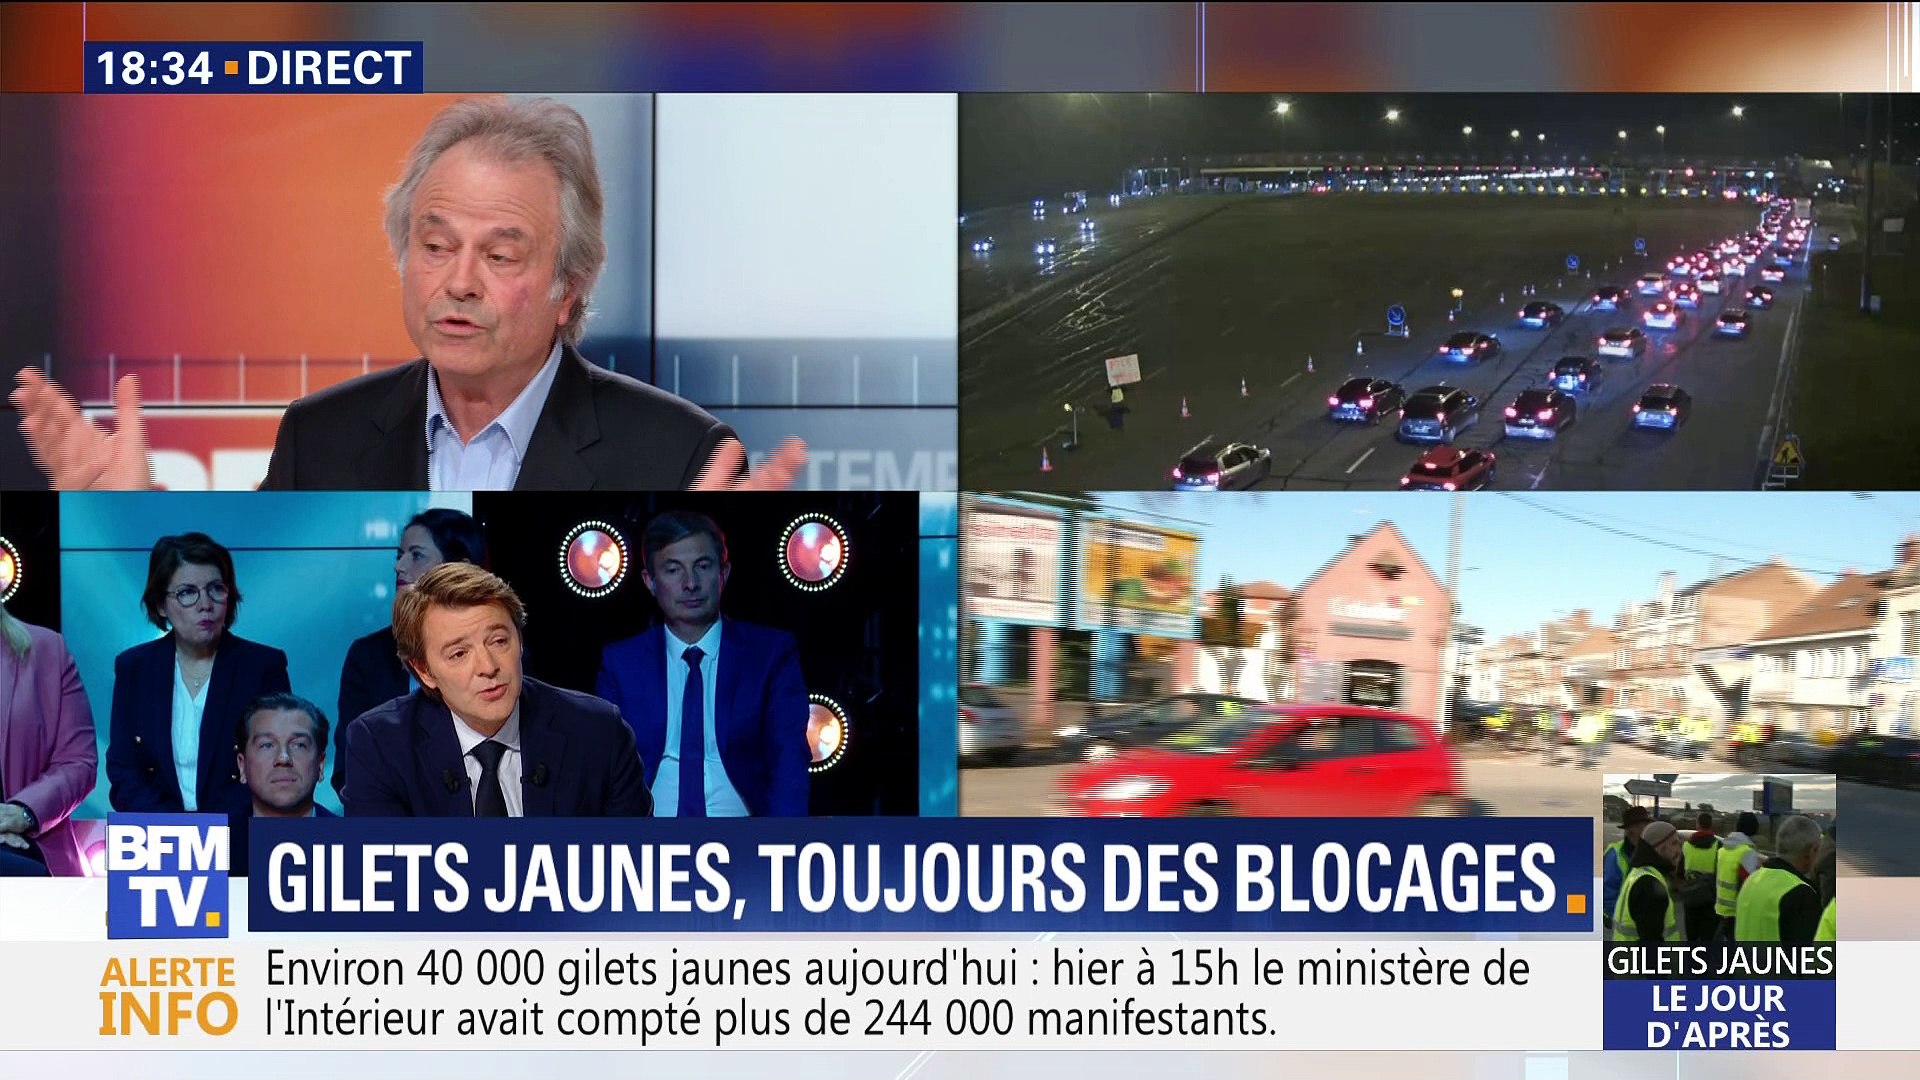 Gilets jaunes: "Macron est tout seul dans sa bulle", Franz-Olivier Giesbert  - Vidéo Dailymotion